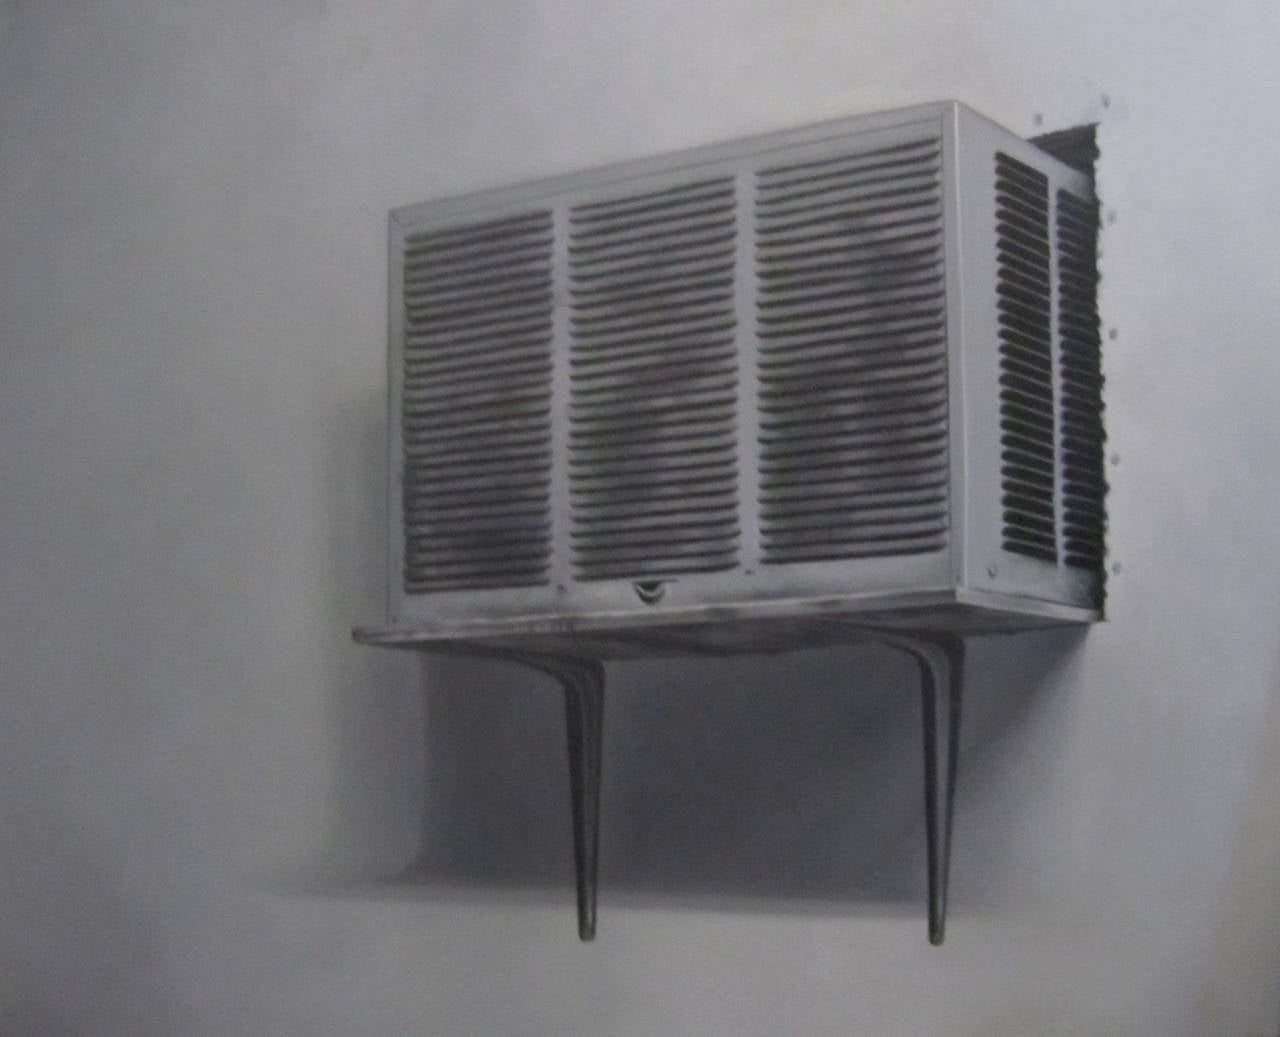 Air Conditioner, 2012